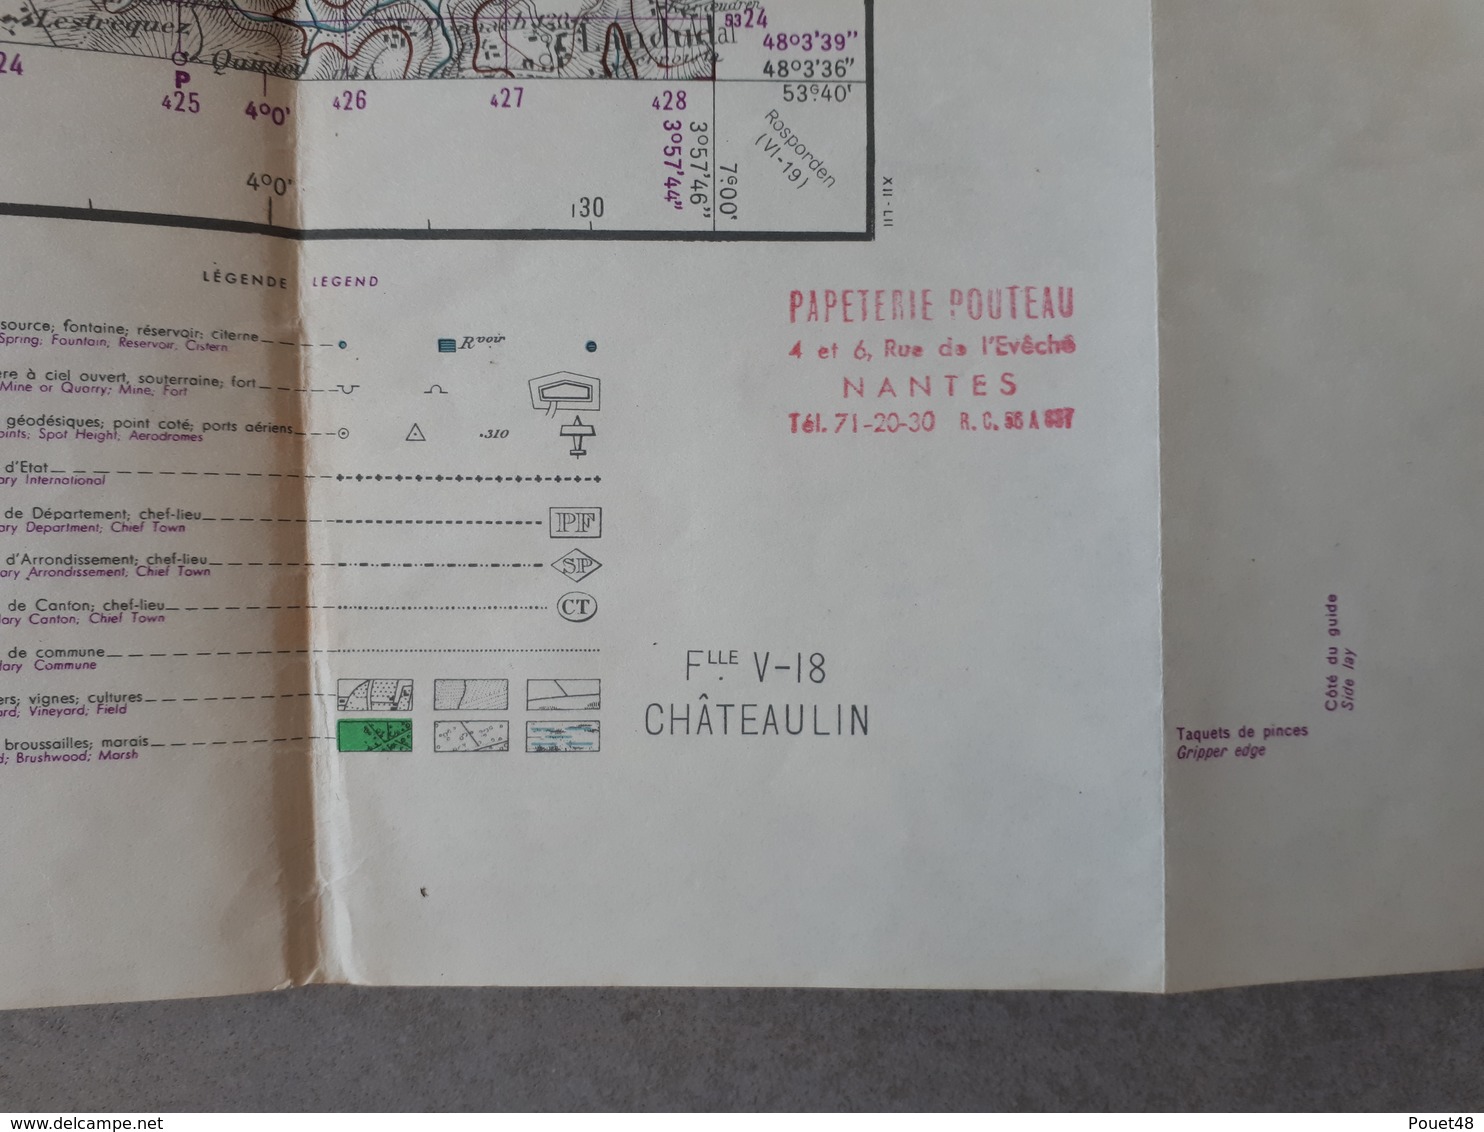 Carte Topographique De CHATEAULIN: 50 000ème: 1952 - Cartes Topographiques